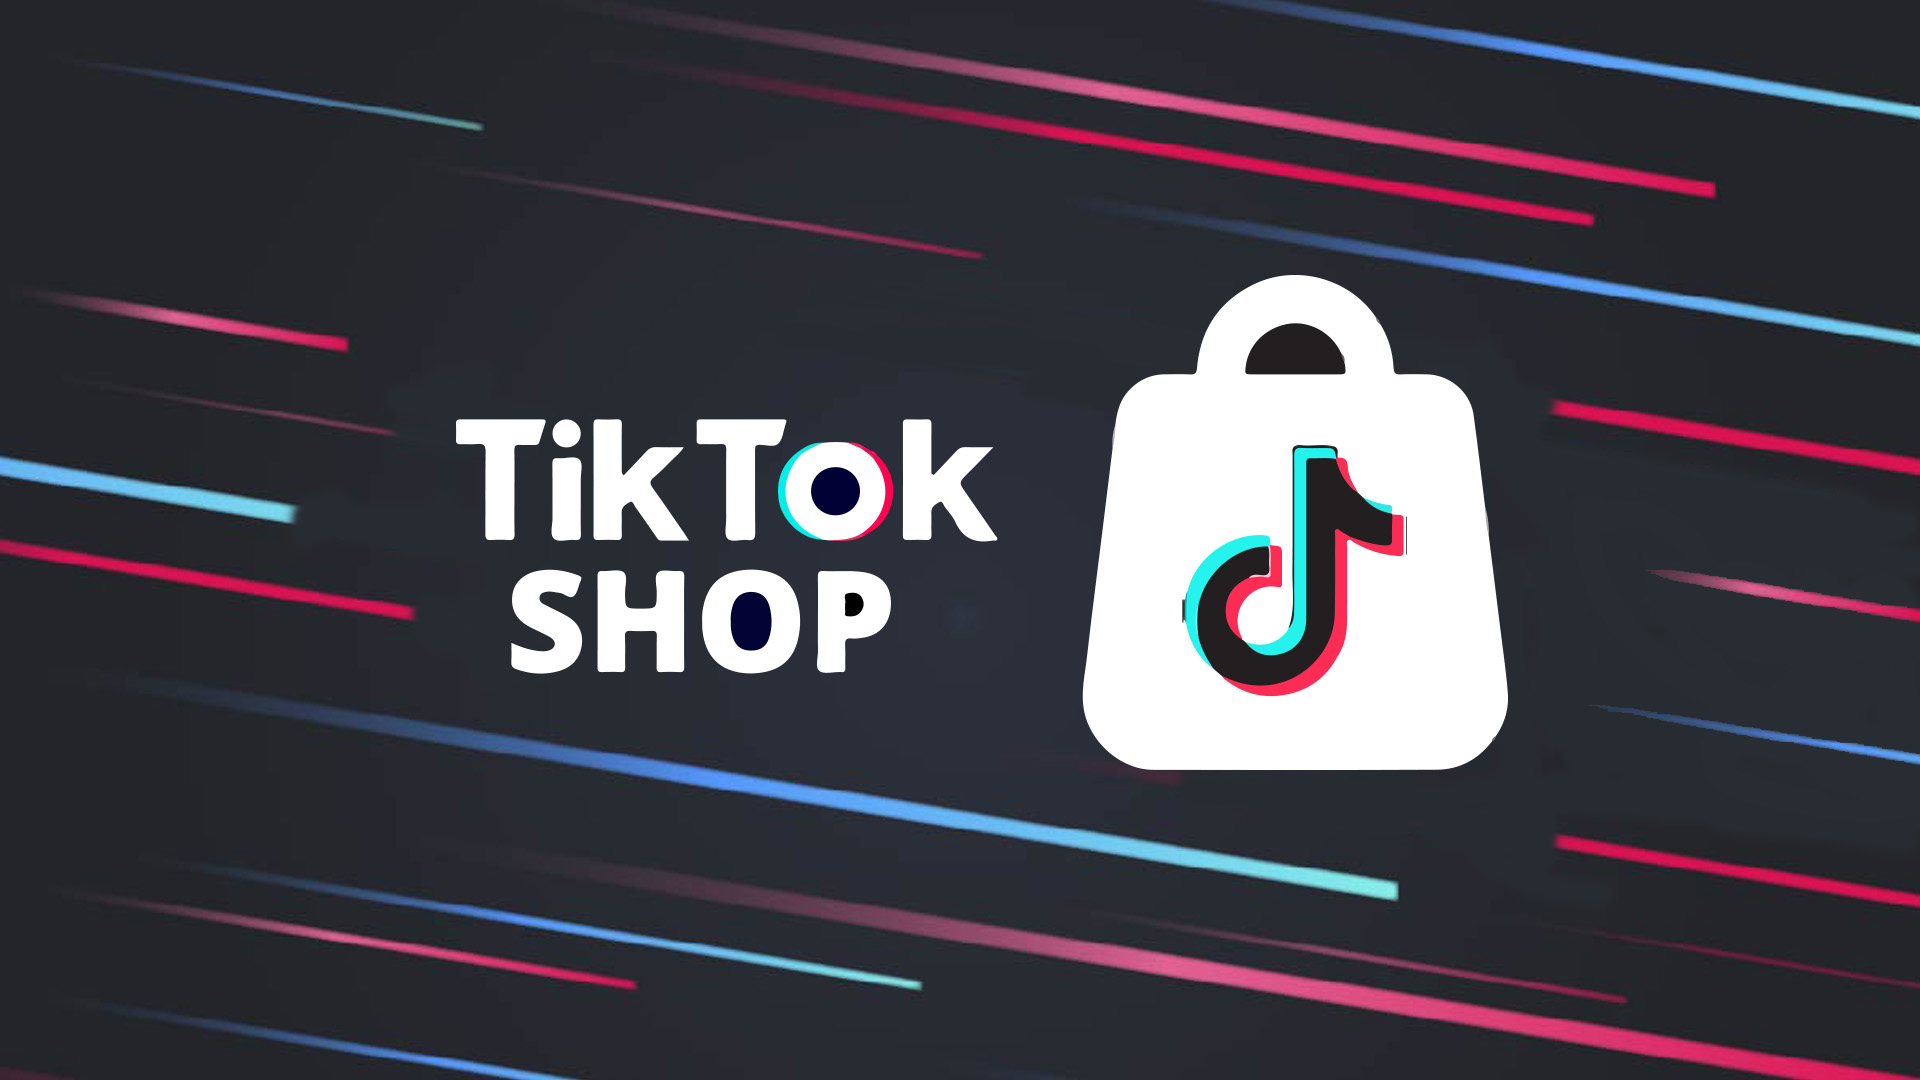 TikTok Shop, Shopee bị nhà bán hàng tố “làm luật”, tự ý nâng chiết khấu - Ảnh 1.